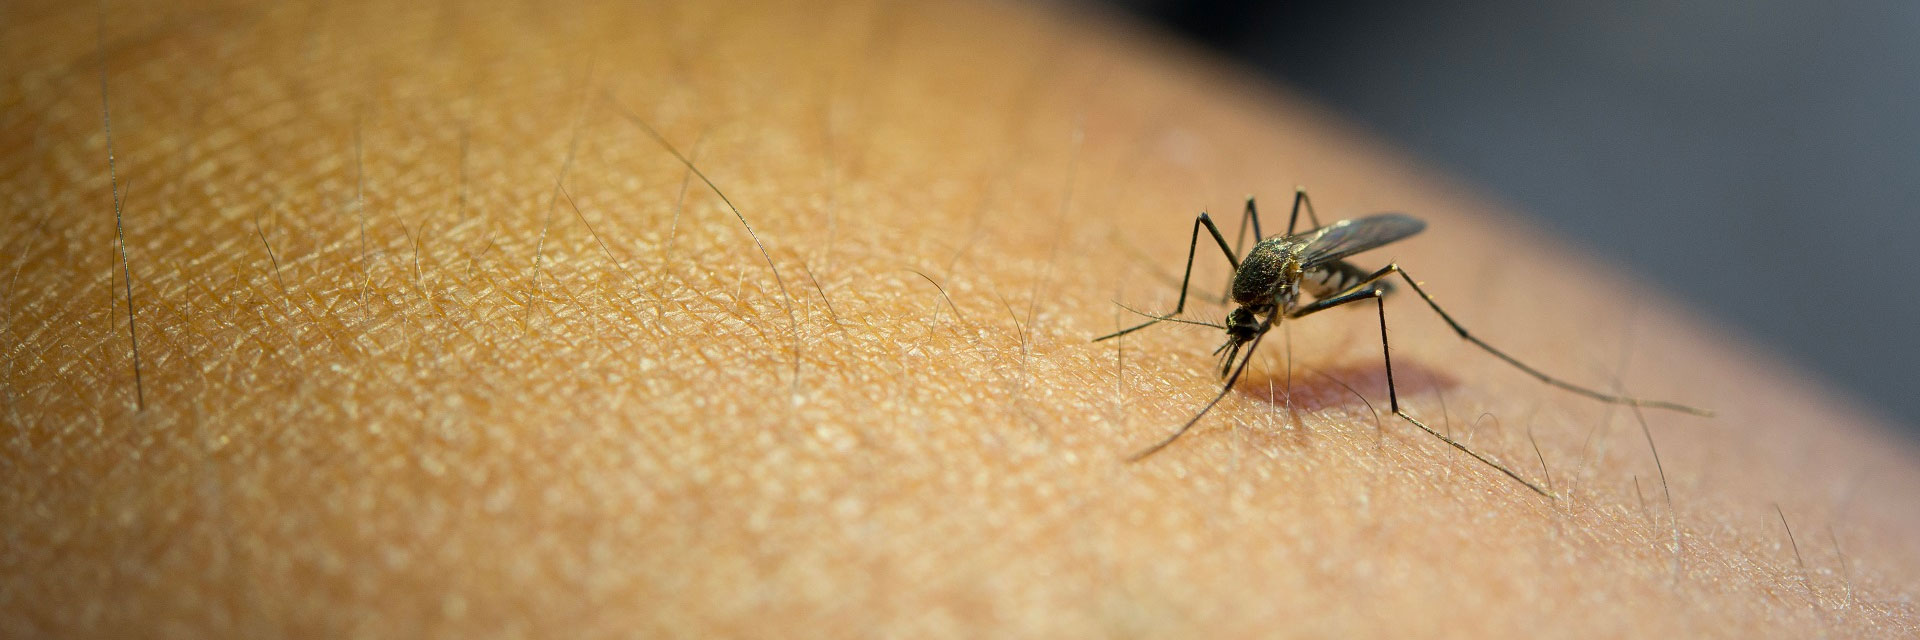 Dengue: Exames e procedimentos cobertos pelos planos de saúde